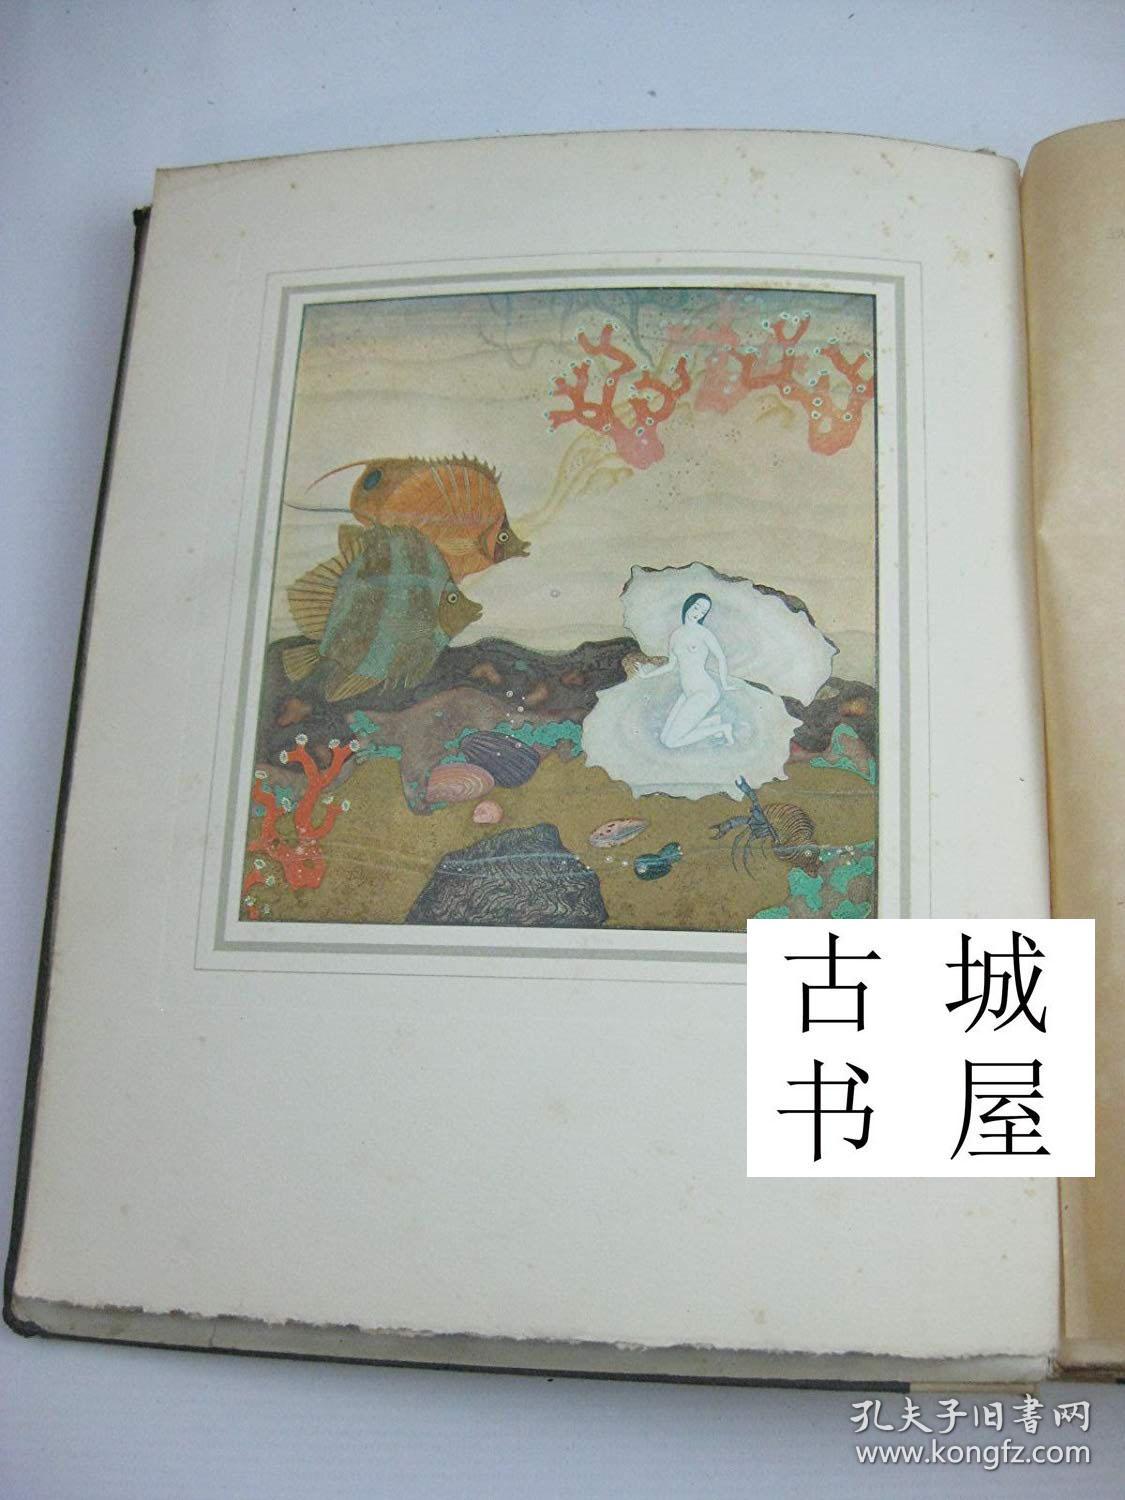 稀缺版 ，埃德蒙·杜拉克绘本《伦纳德·罗森塔尔名著-- 珍珠王国 》10彩色版画插图 ，约1920年出版，精装24开